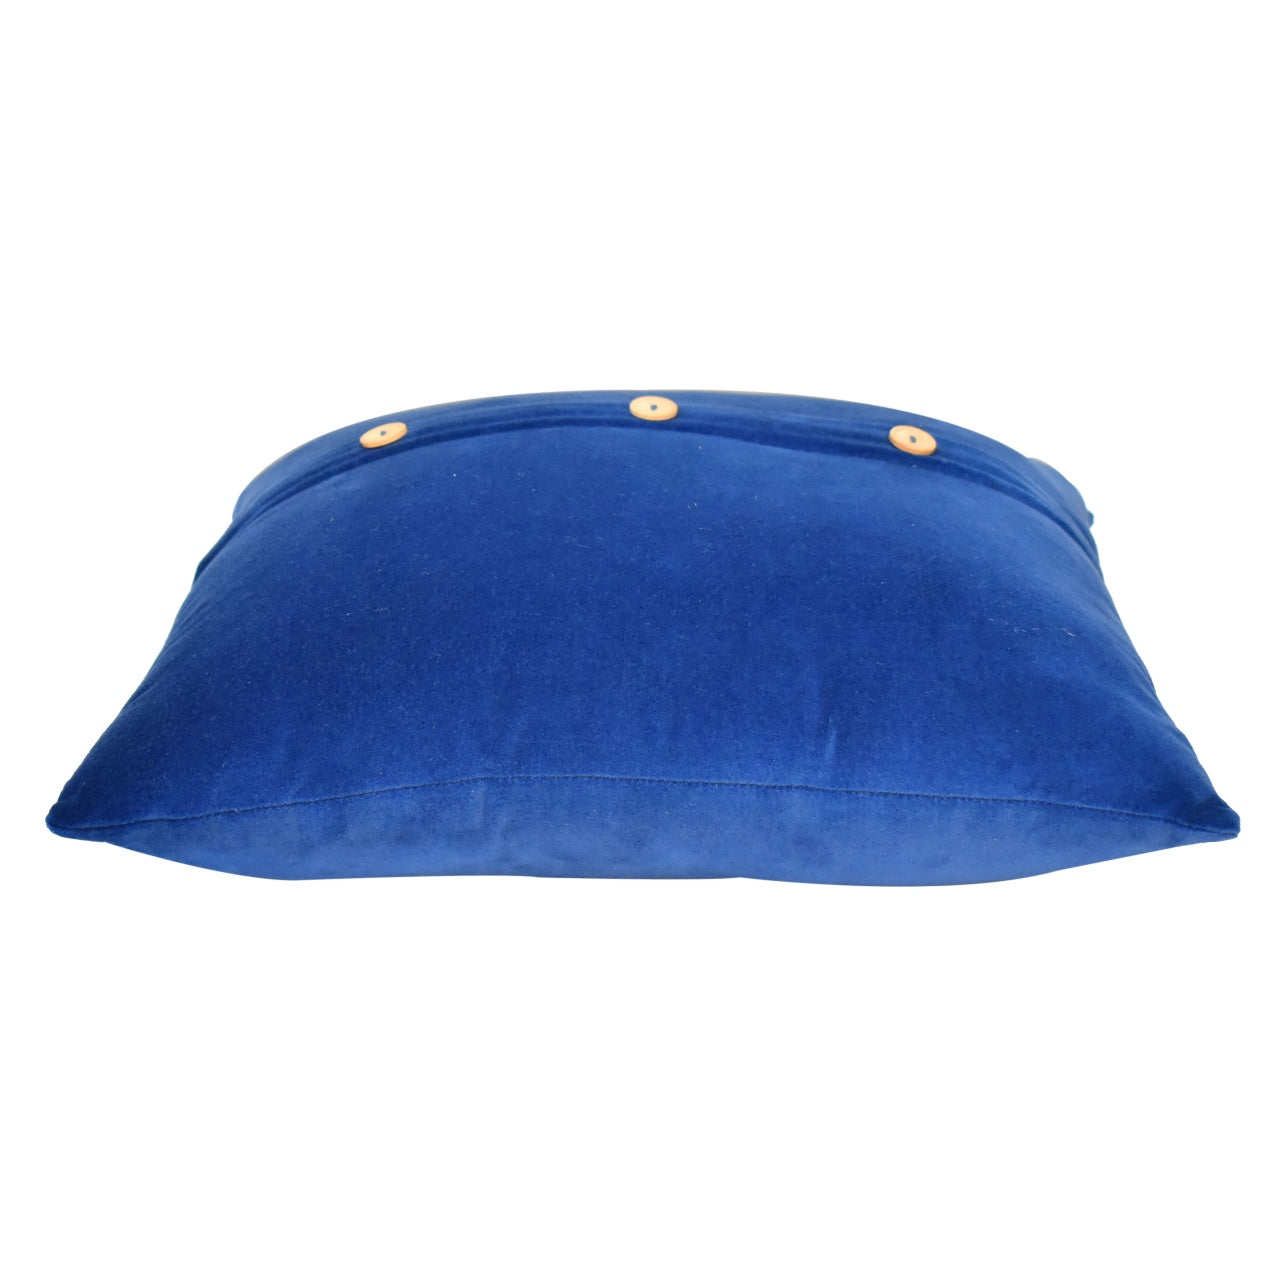 Quinn Cushion Set of 2 - Royal Blue